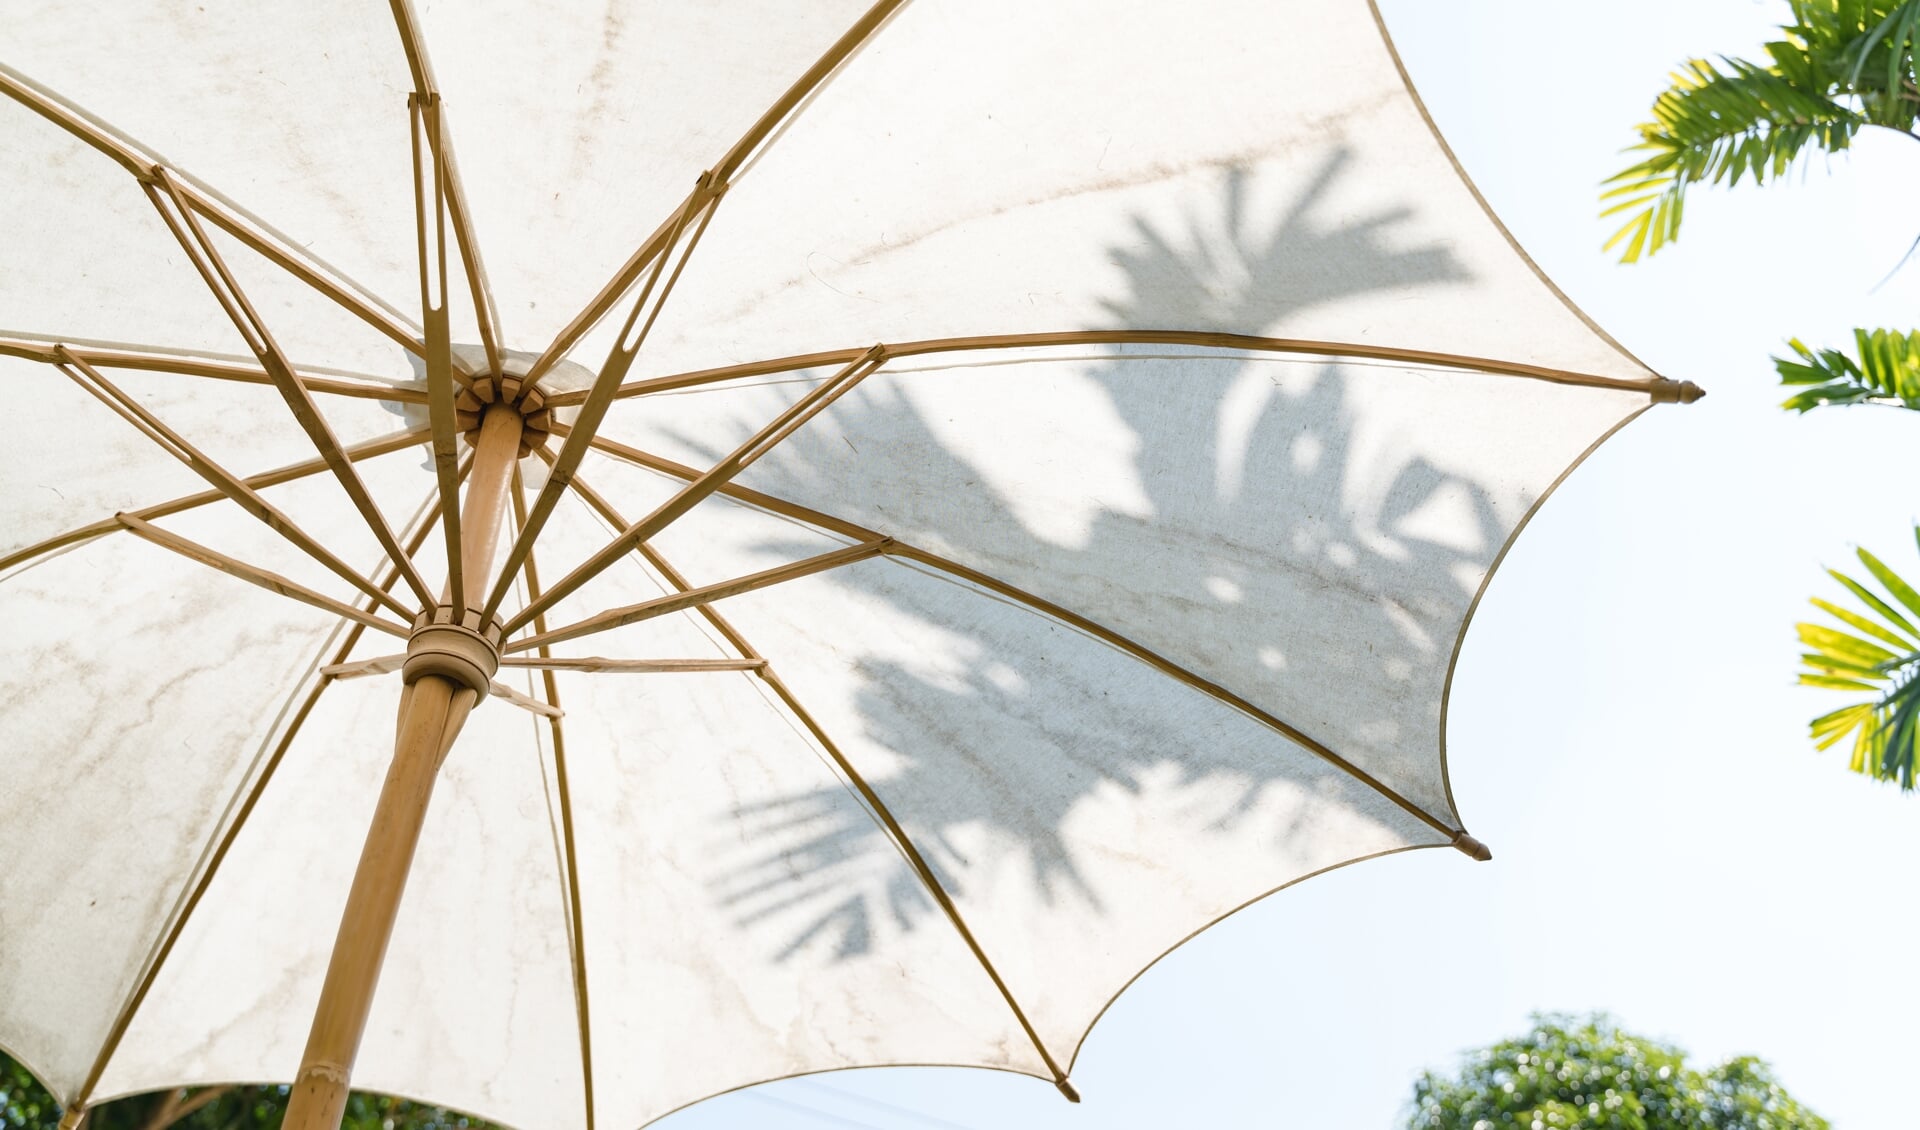 soorten parasols een | Altijd op de hoogte van het woonnieuws uit jouw omgeving